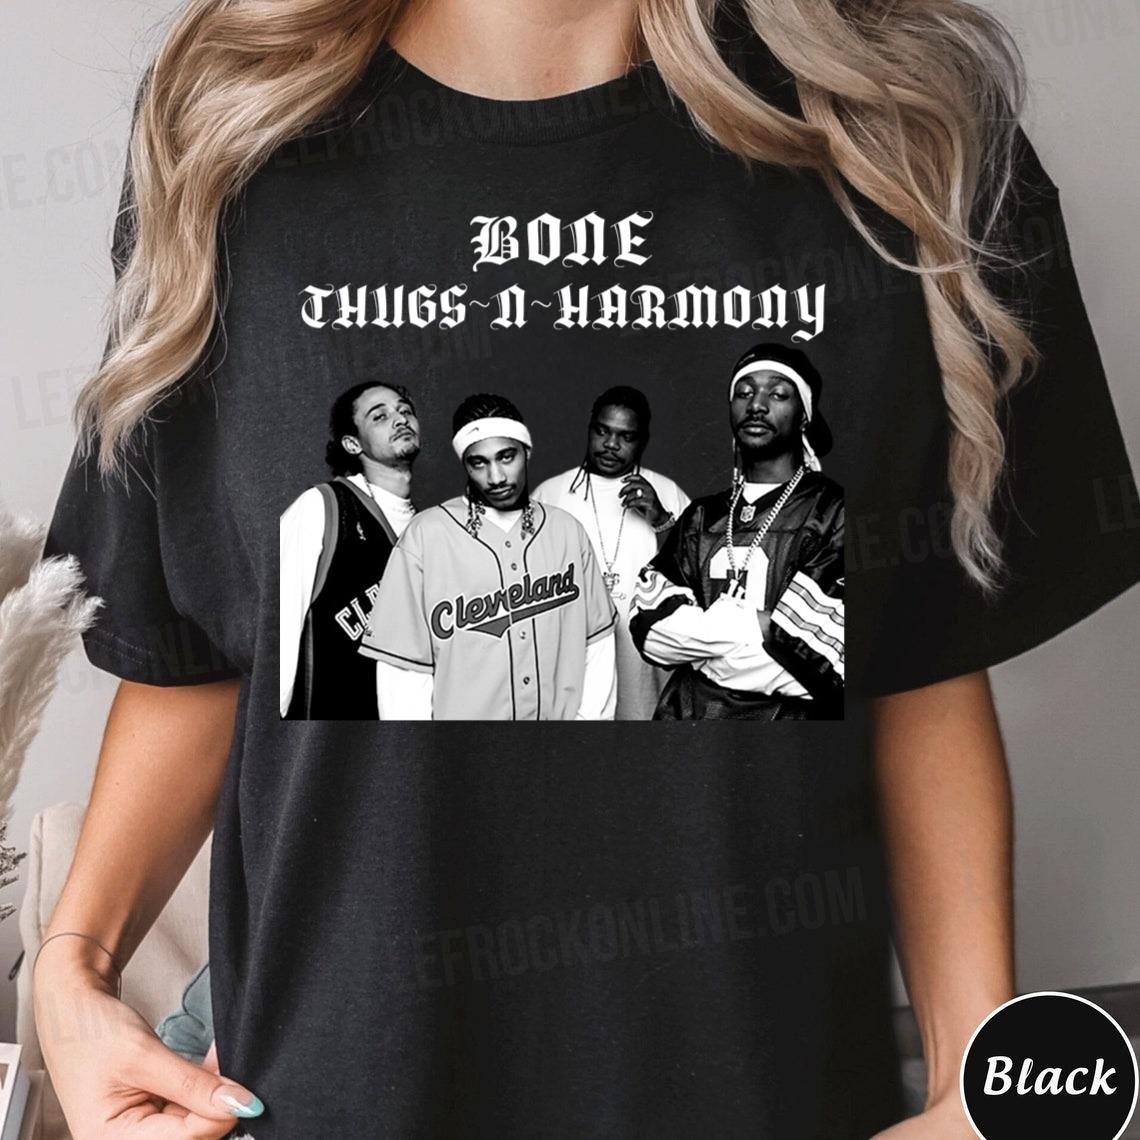 Black & White Bone Thugs N Harmony Bone Thugs N Harmony T Shirt